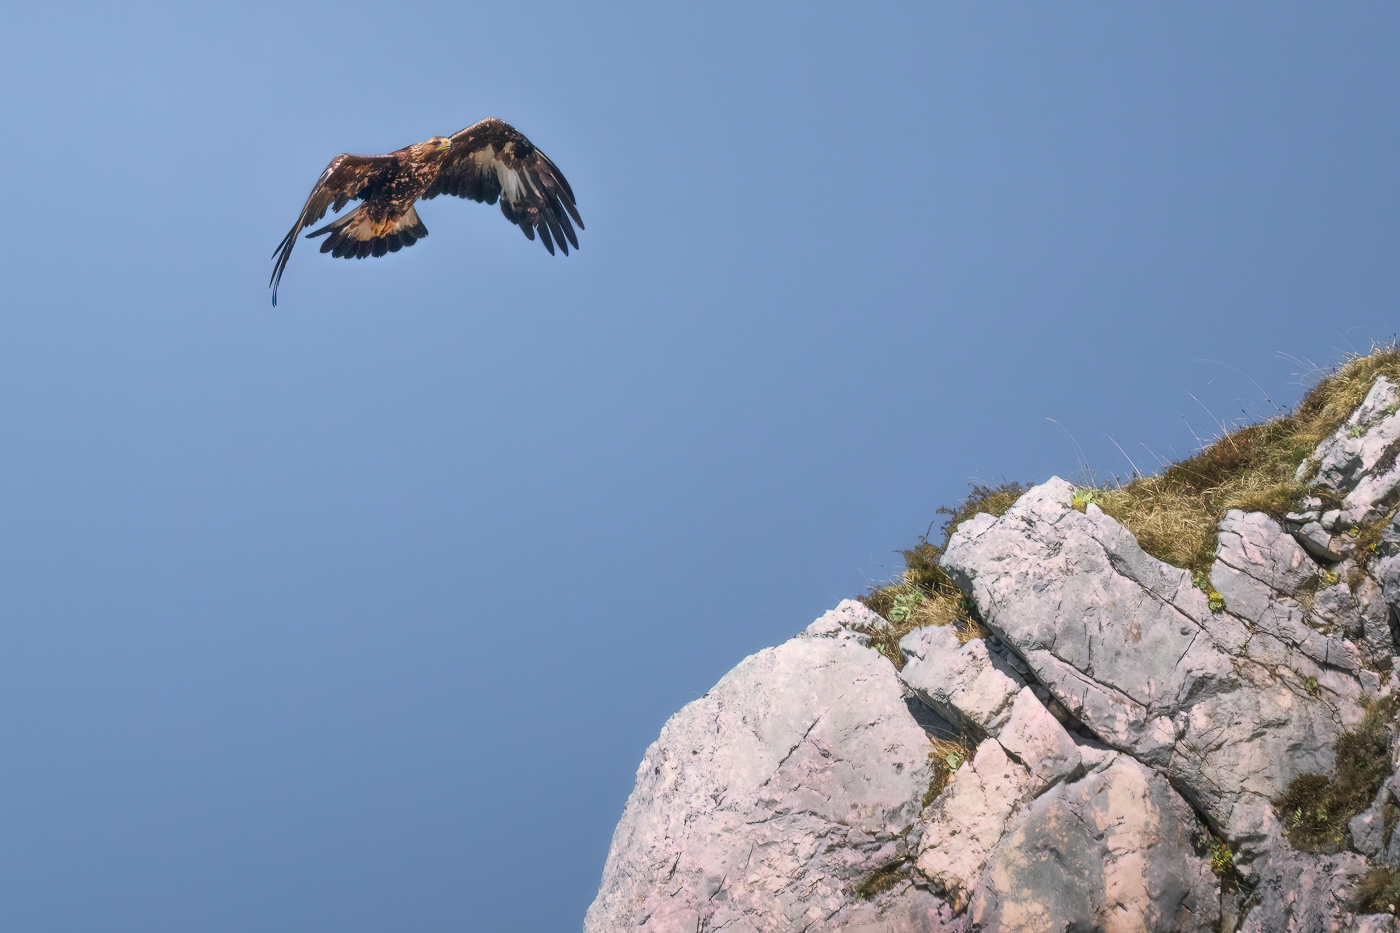 Una splendida aquila reale (Aquila chrysaetos) prende quota per superare le creste rocciose delle Alpi Giulie, Italia.